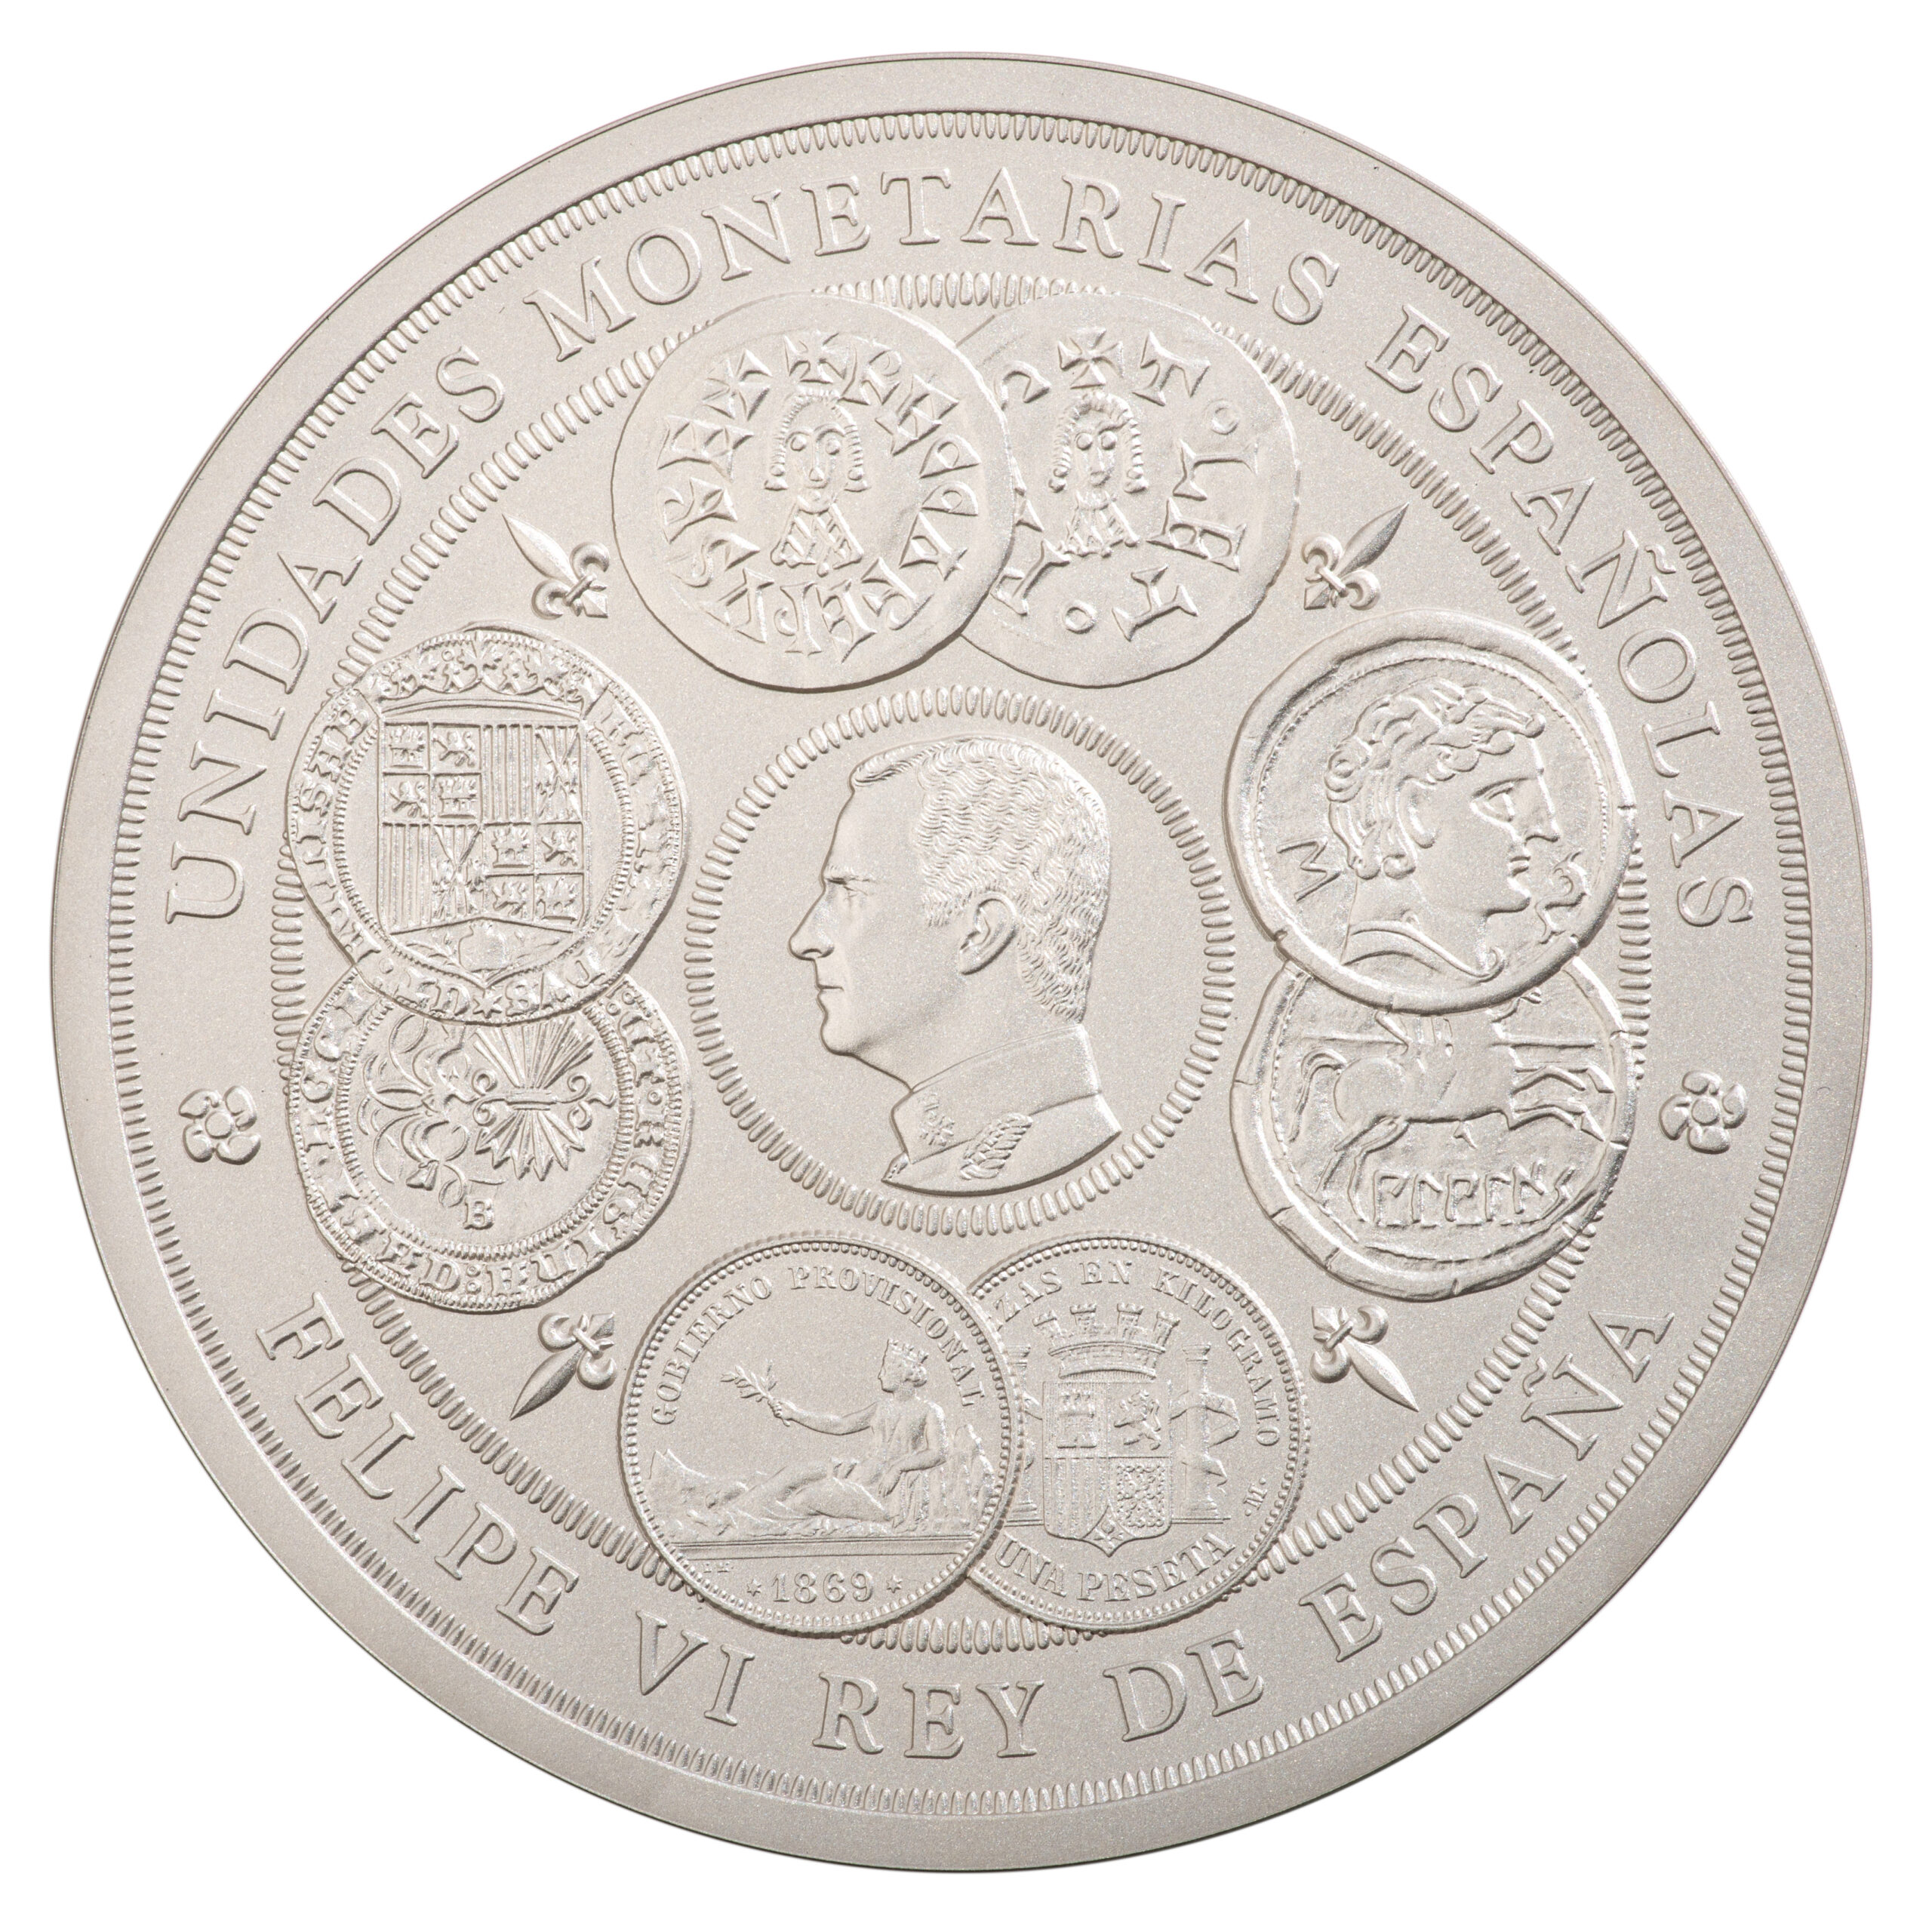 ES 300 Euro 2019 Real Casa de la Moneda logo